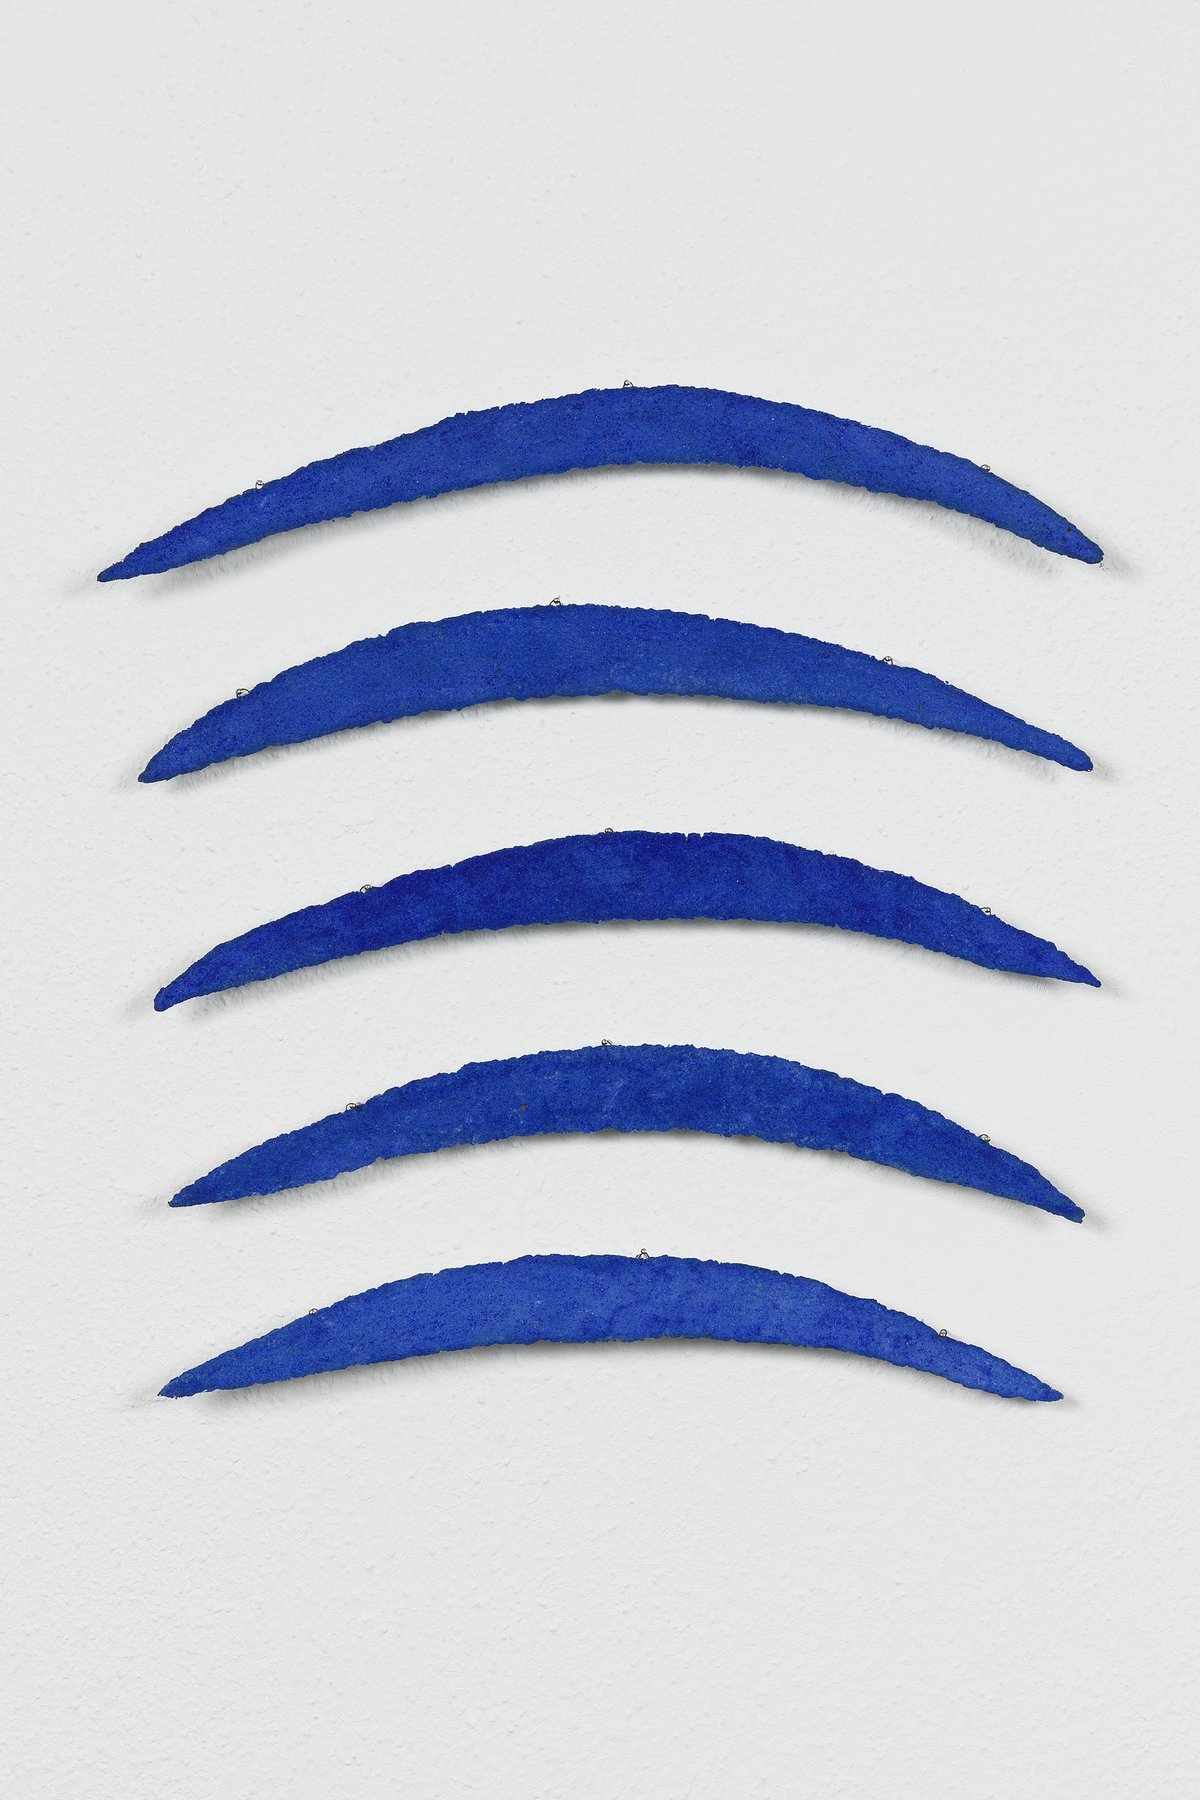 helmut dirnaichner, &quot;übers meer, 5-part&quot; (1990), lapis lazuli, cellulose, 42 x 30 cm